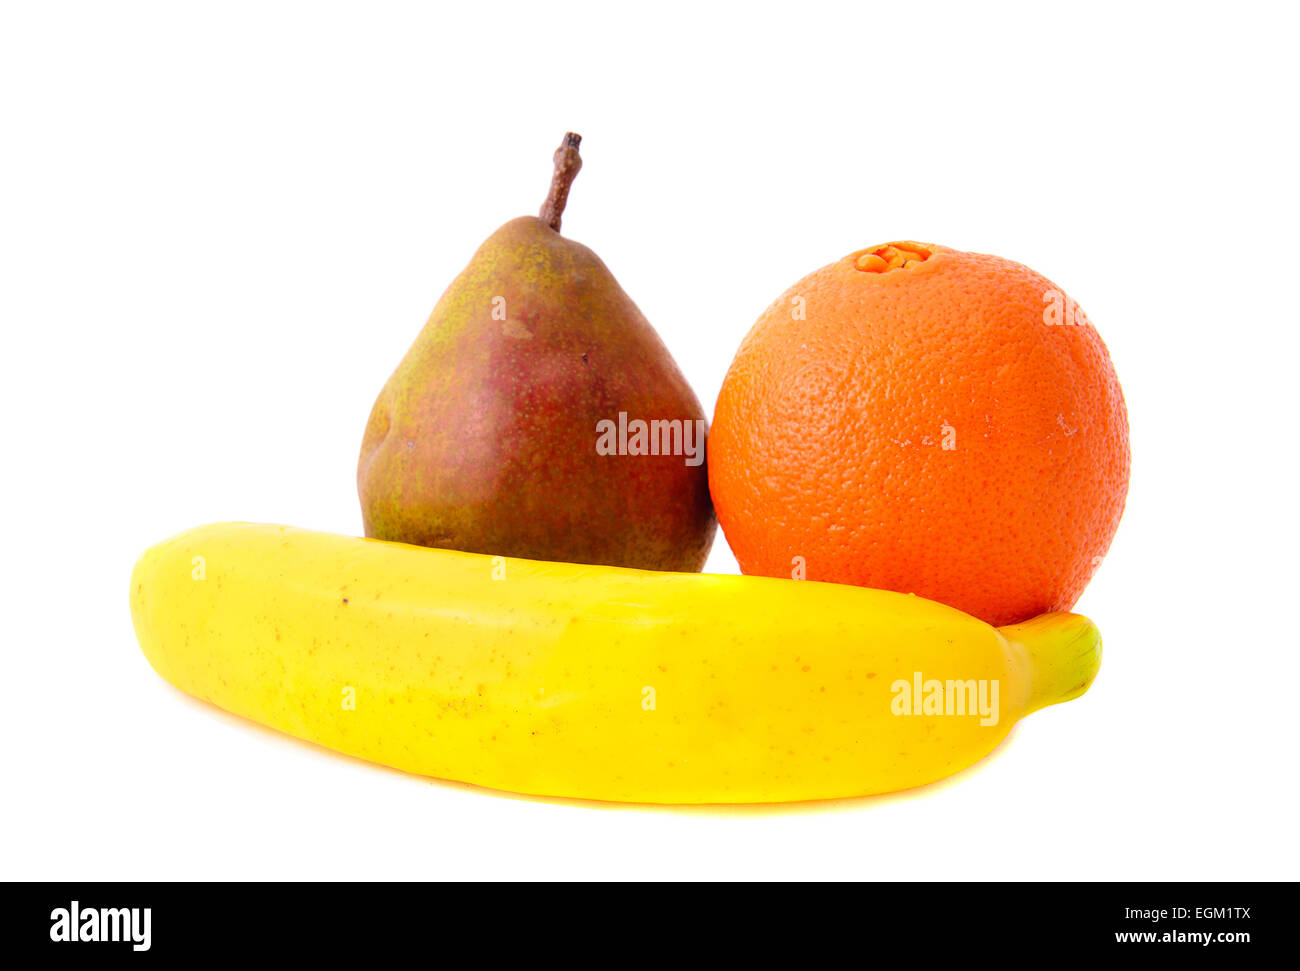 Fresh Fruits: Pear, Banana and Orange. Isolatet Stock Photo